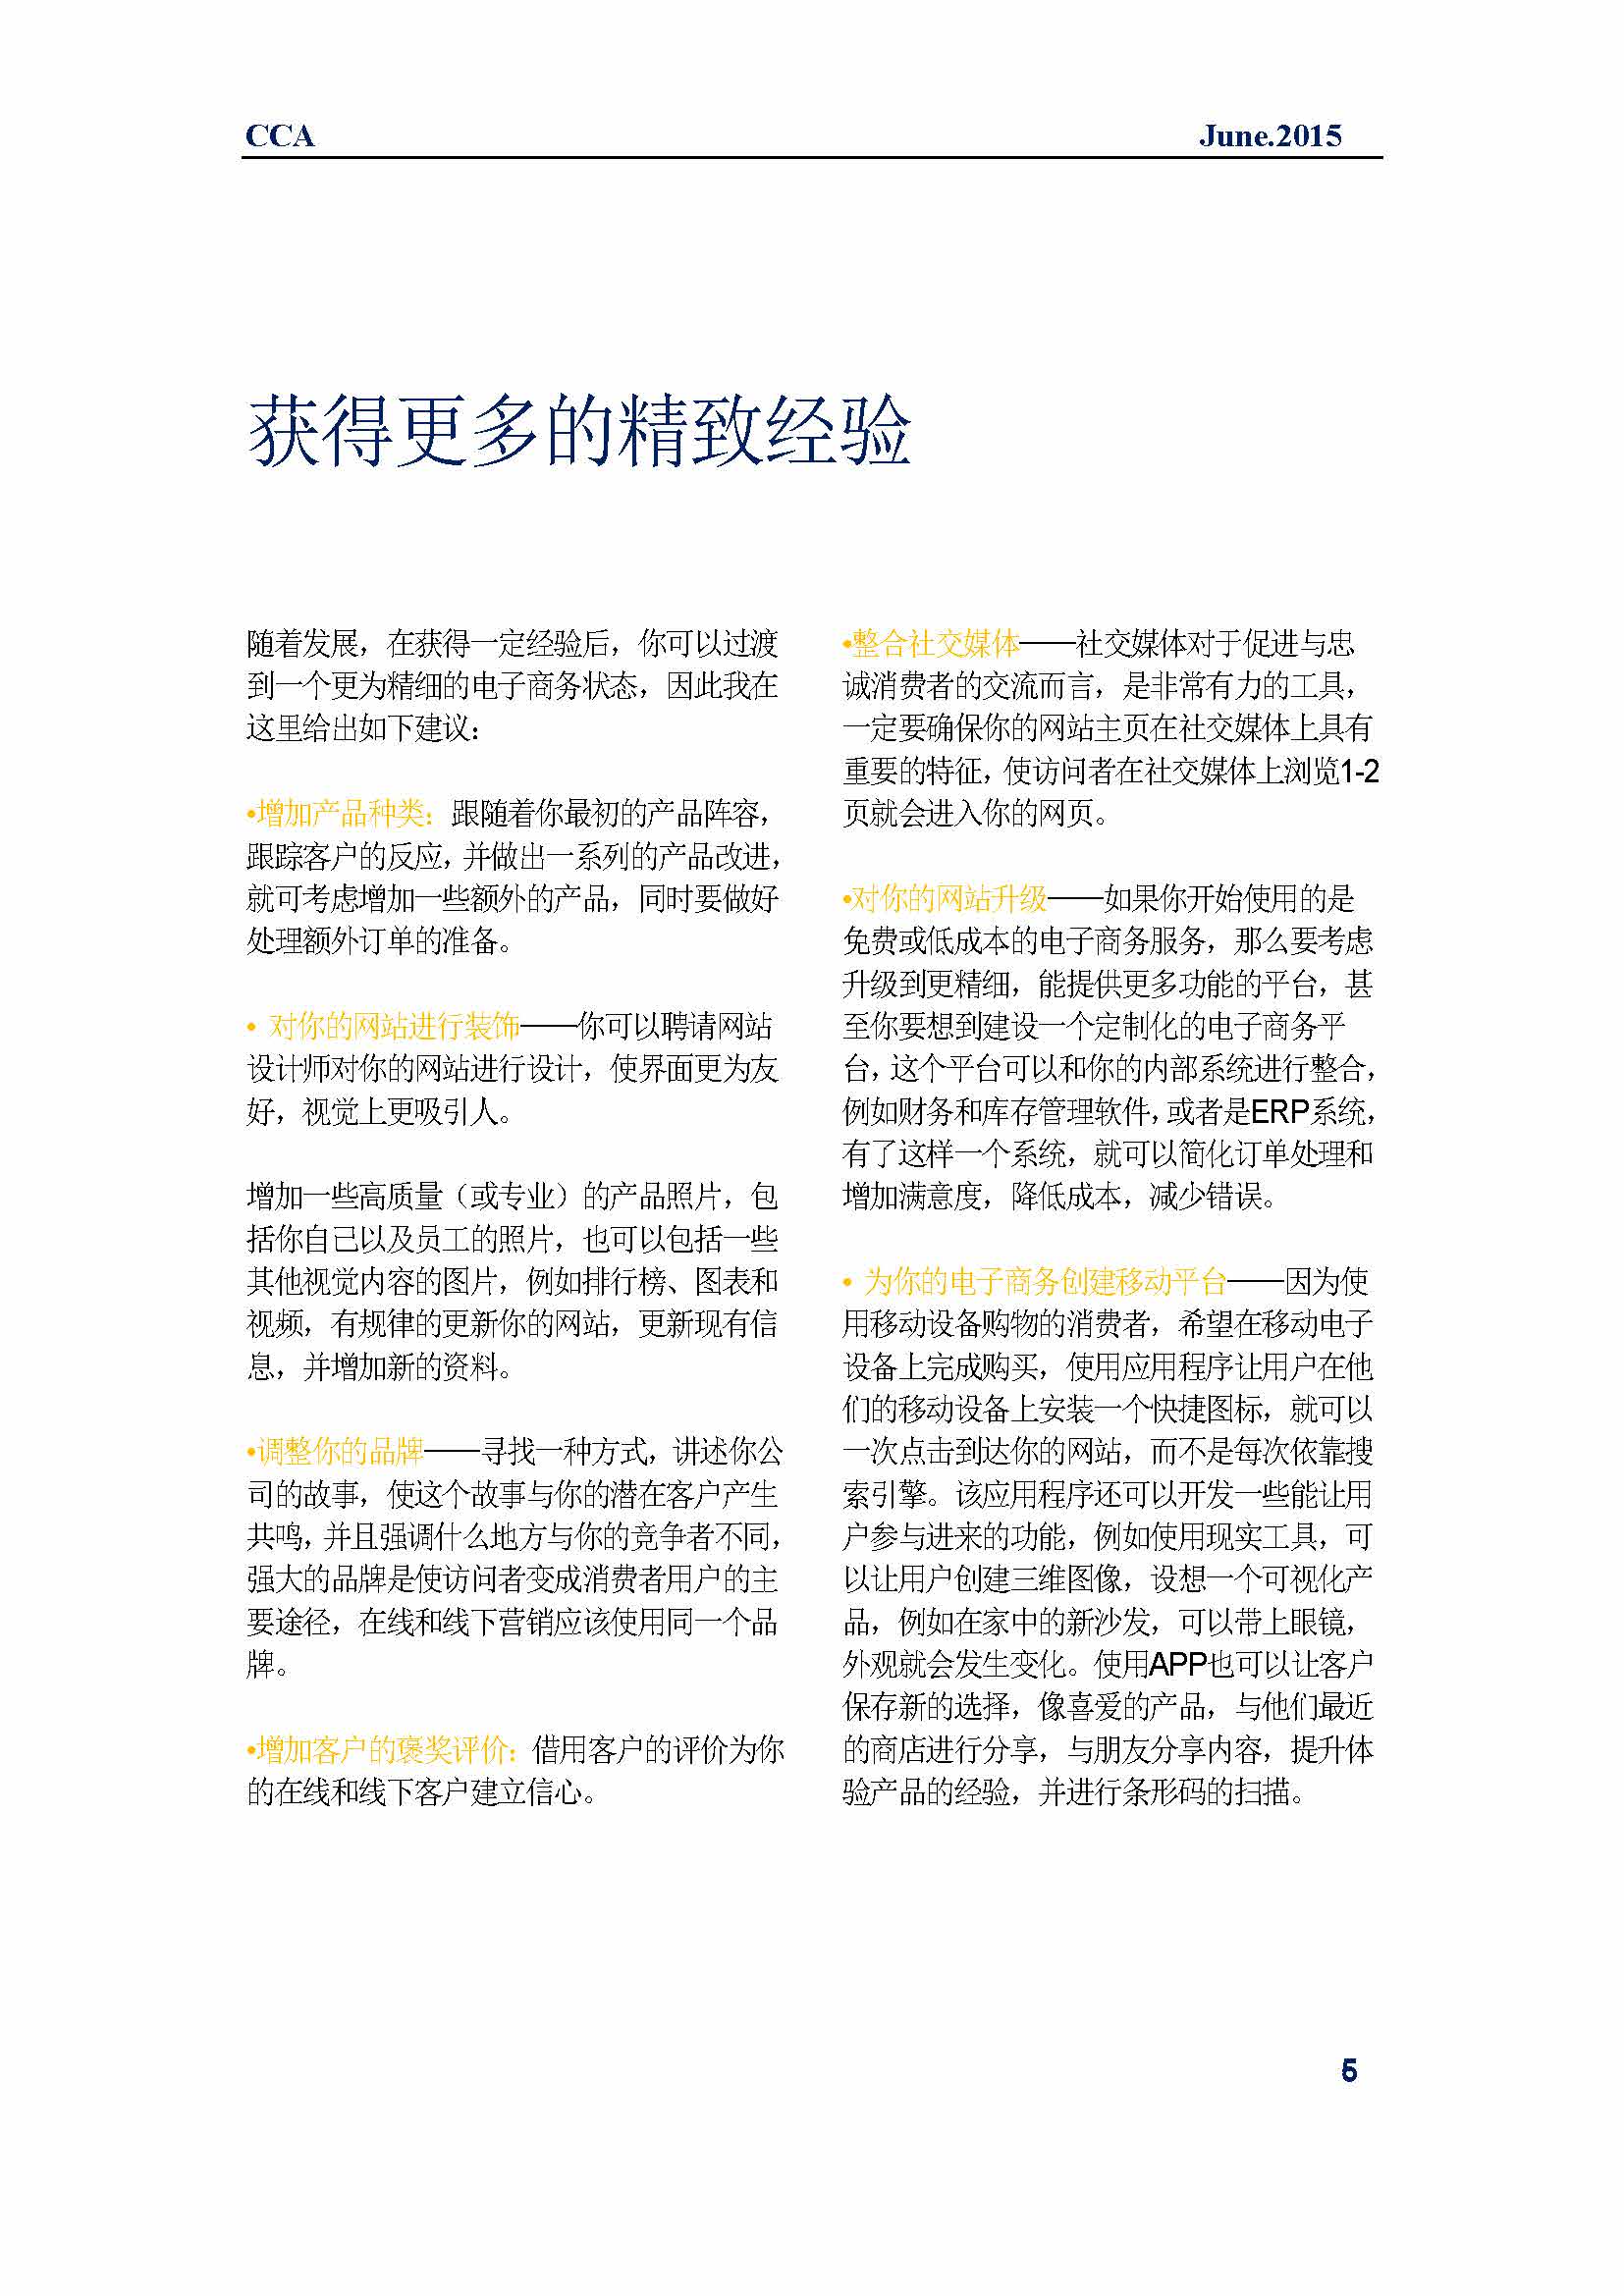 中国科技咨询协会国际快讯（第二十四期）_页面_08.jpg